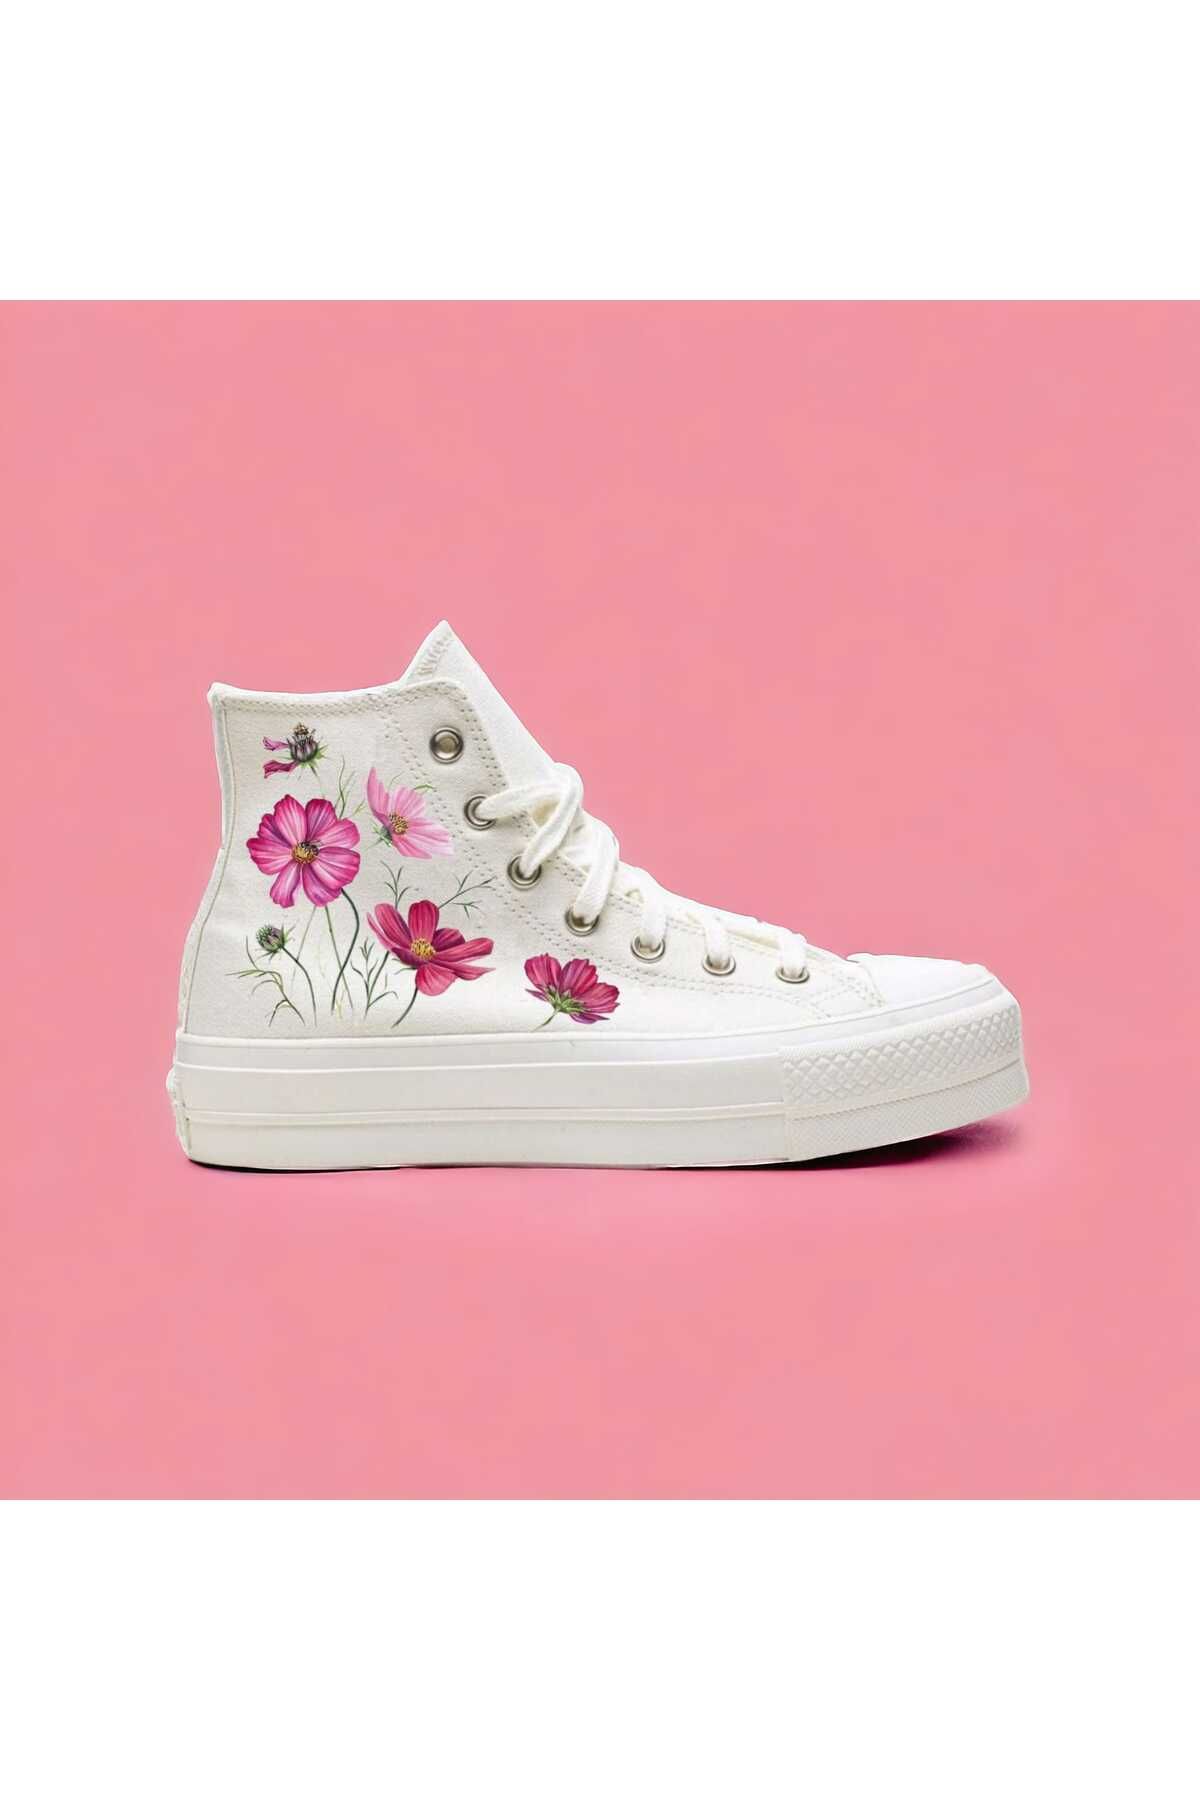 amazoondesing çiçek flower baskılı özel tasarım sneaker spor ayakkabı